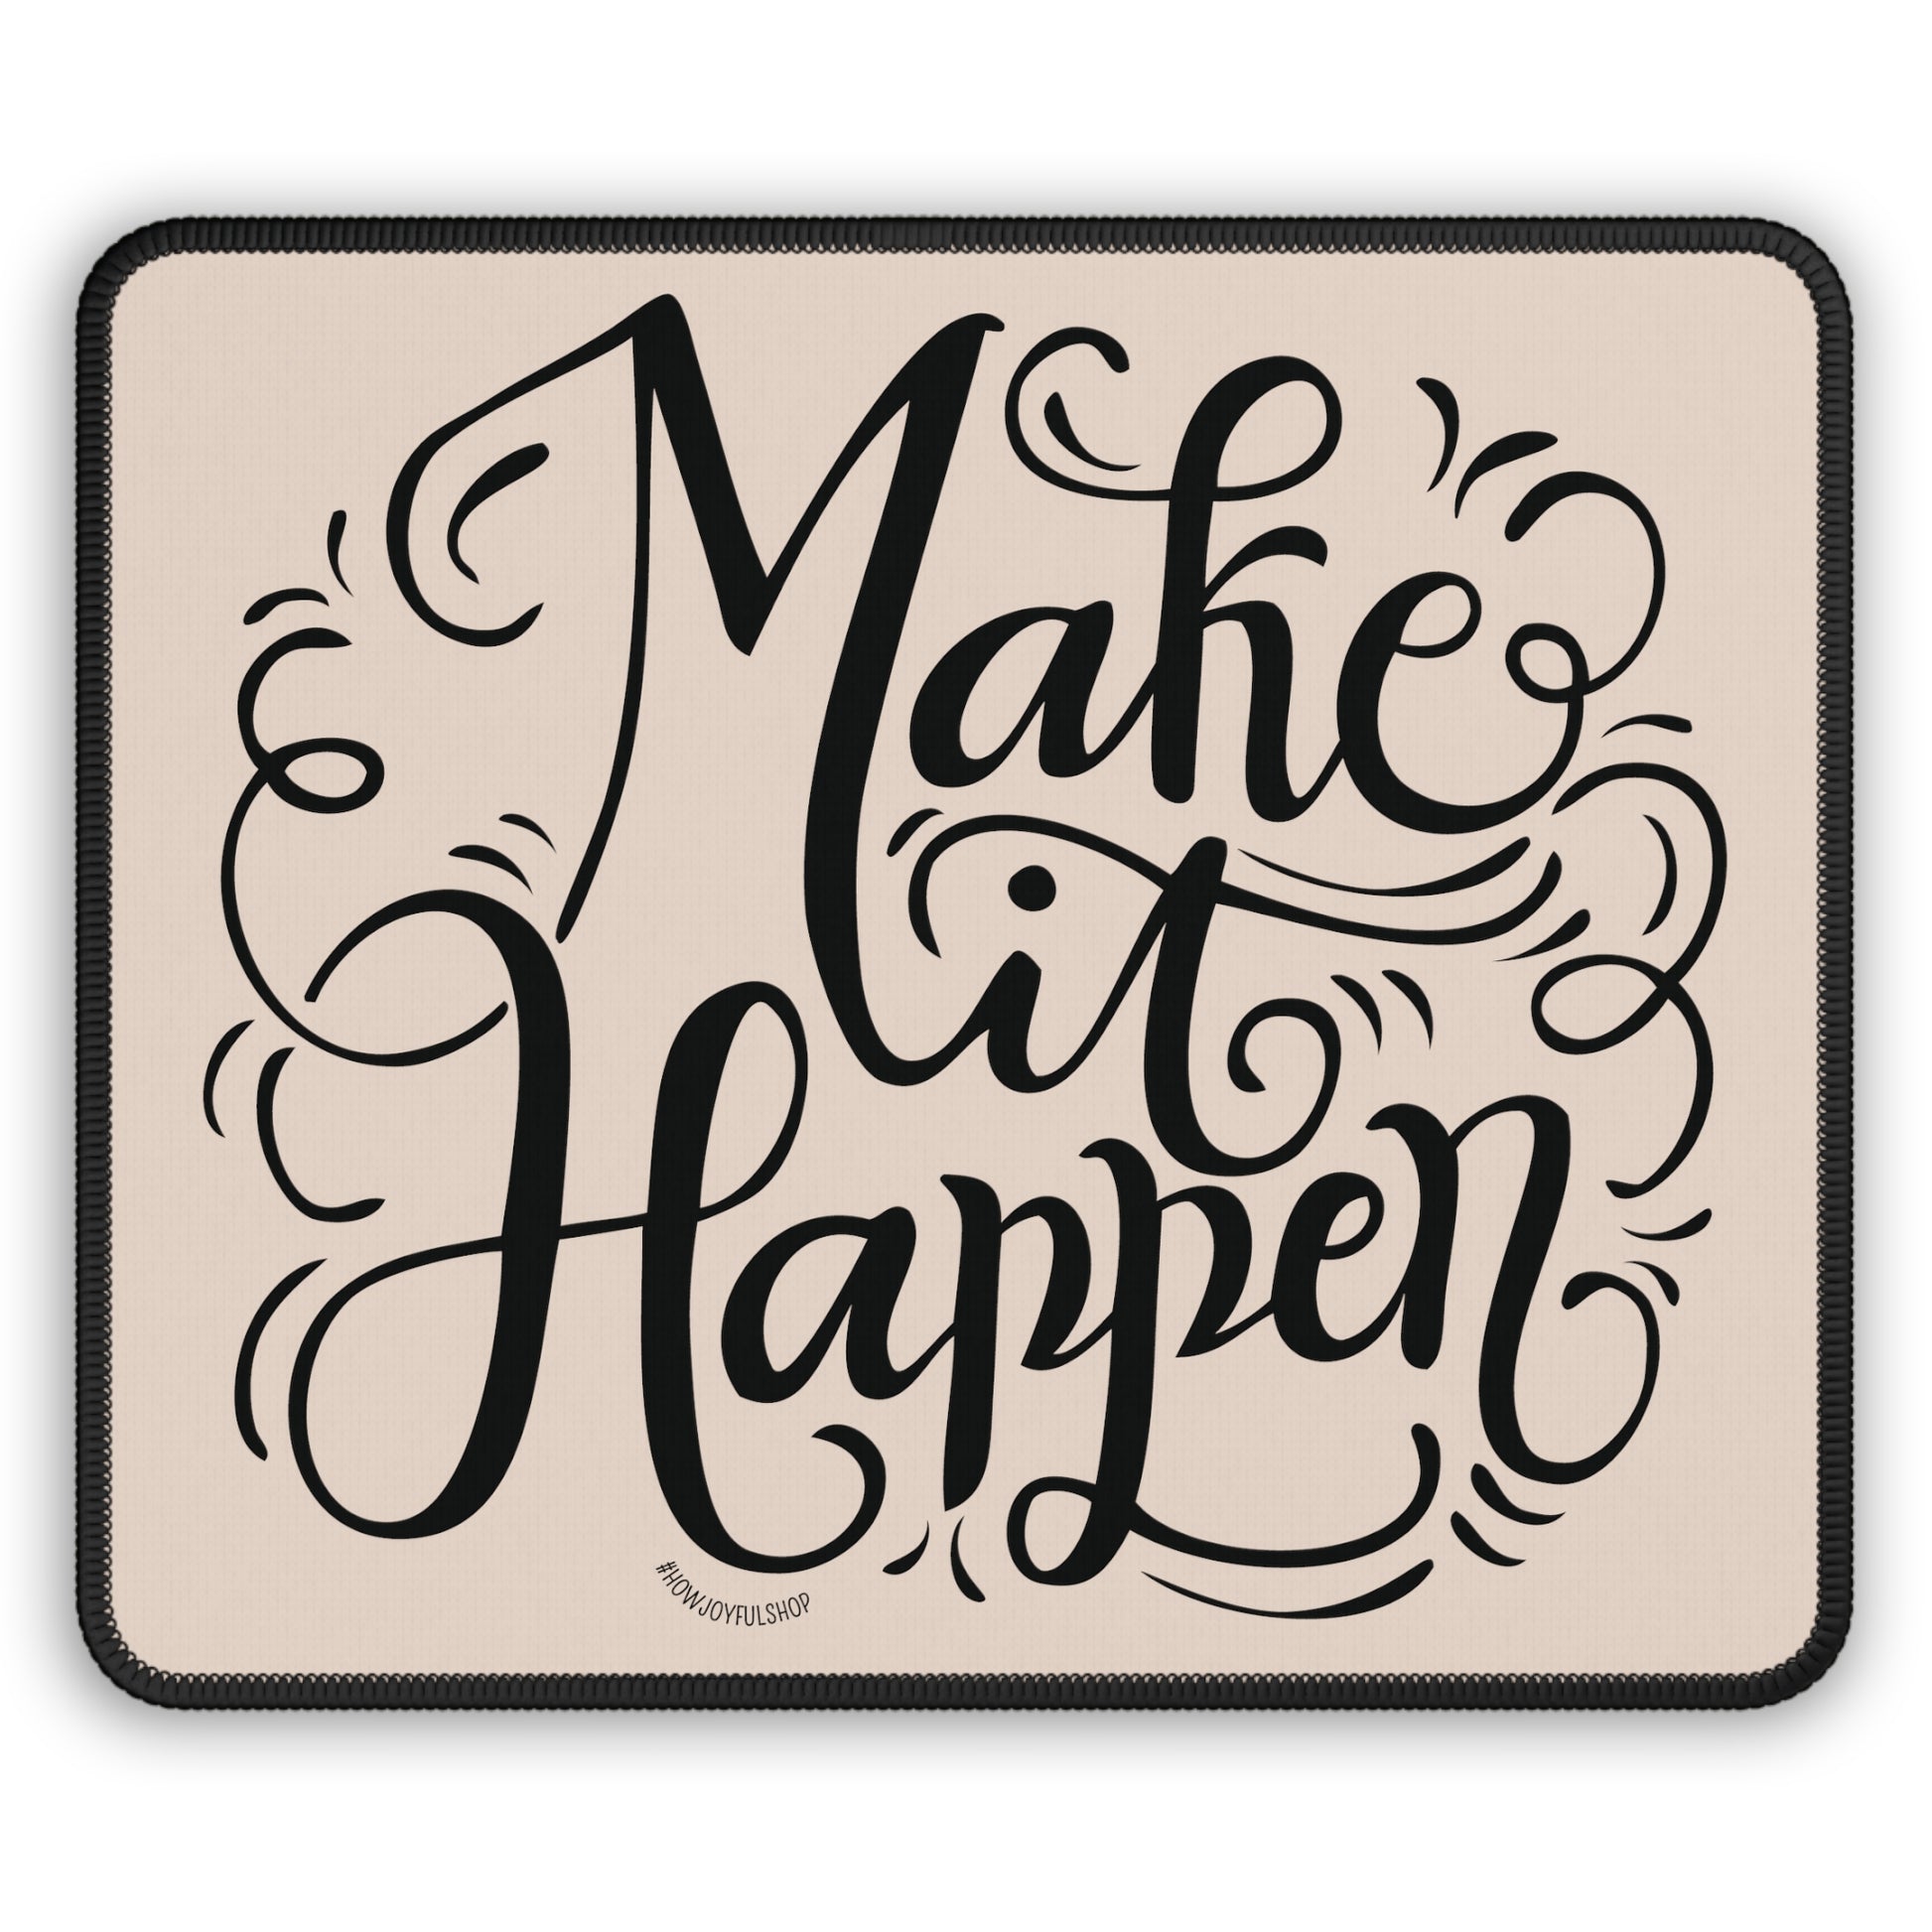 Make it happen - Tan Mousepad - howjoyfulshop